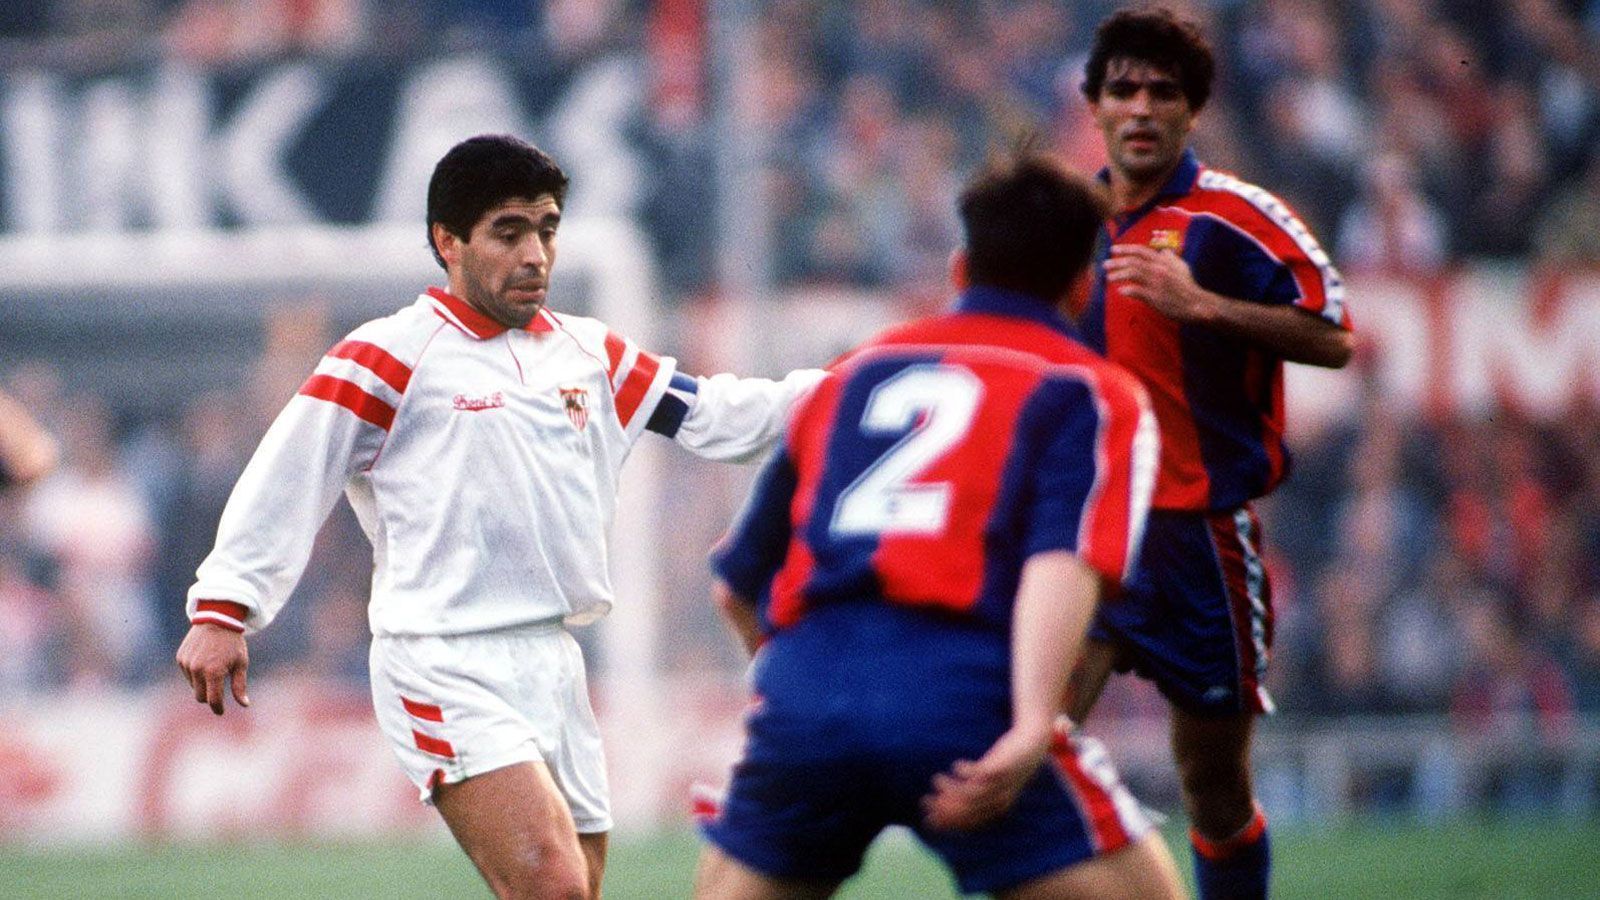 
                <strong>Letzte Stationen als Profi</strong><br>
                Maradona konnte nicht mehr an seine herausragende Form anknüpfen. 1992 verließ er Neapel und ging nach einer kurzen Zeit beim FC Sevilla zurück in die Heimat. Nach seiner zweiten Doping-Sperre ließ er seine Karriere bei den Boca Juniors ausklingen. Am 30. Oktober 1997 hängte er seine Fußball-Schuhe endgültig an den Nagel.
              